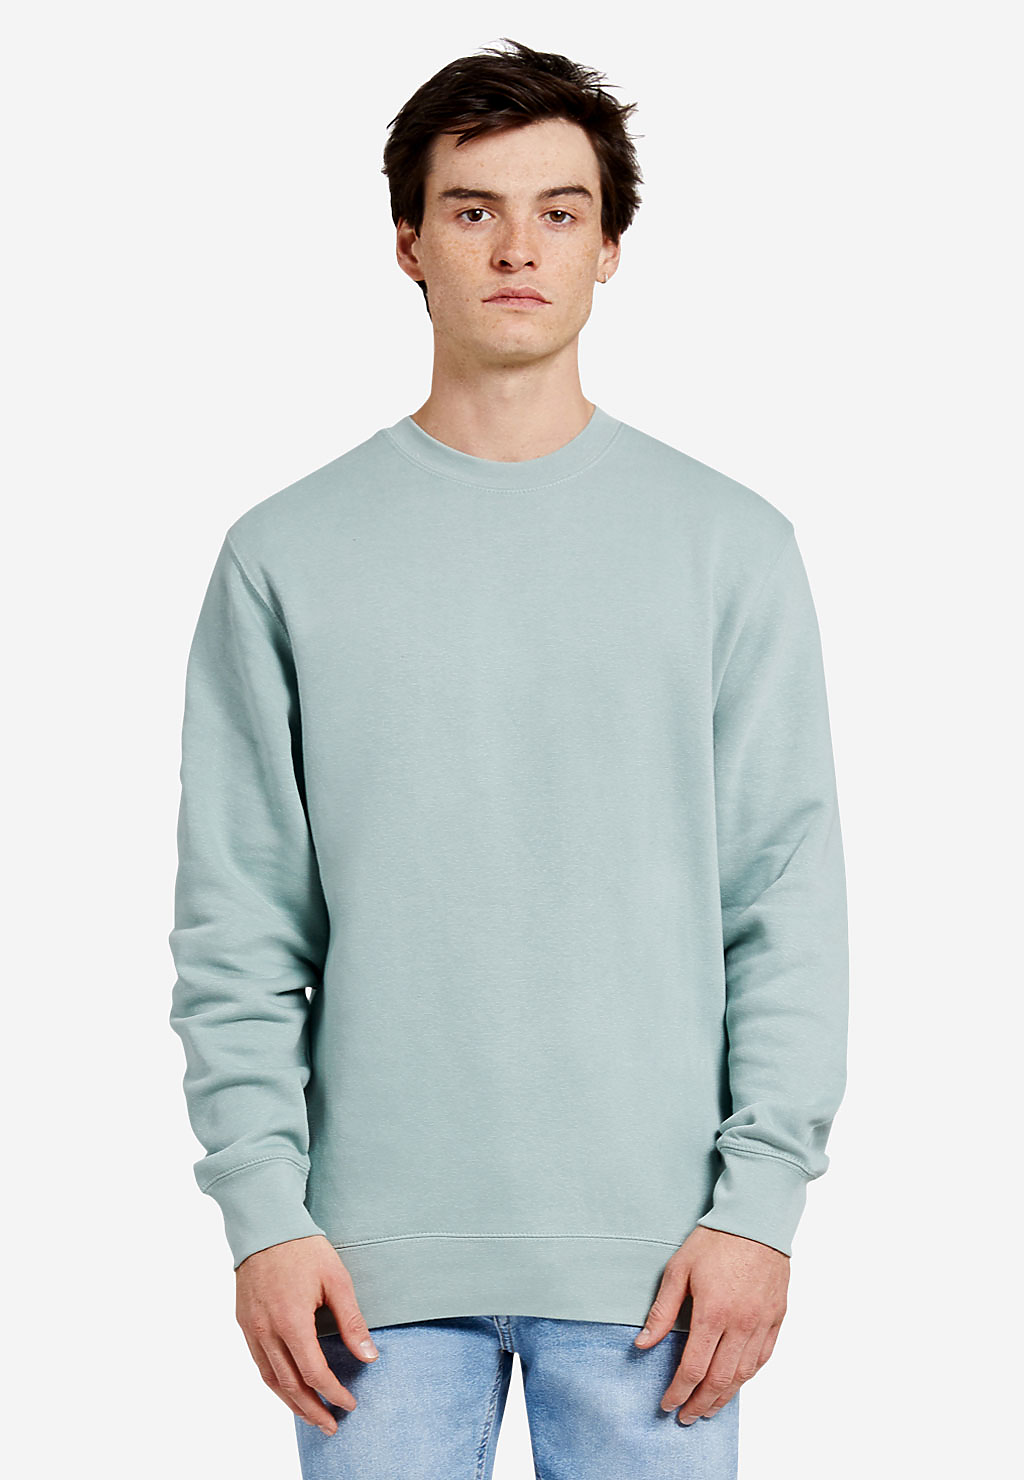 The Comfort Colors Adult Crewneck Sweatshirt - LIGHT GREEN - L